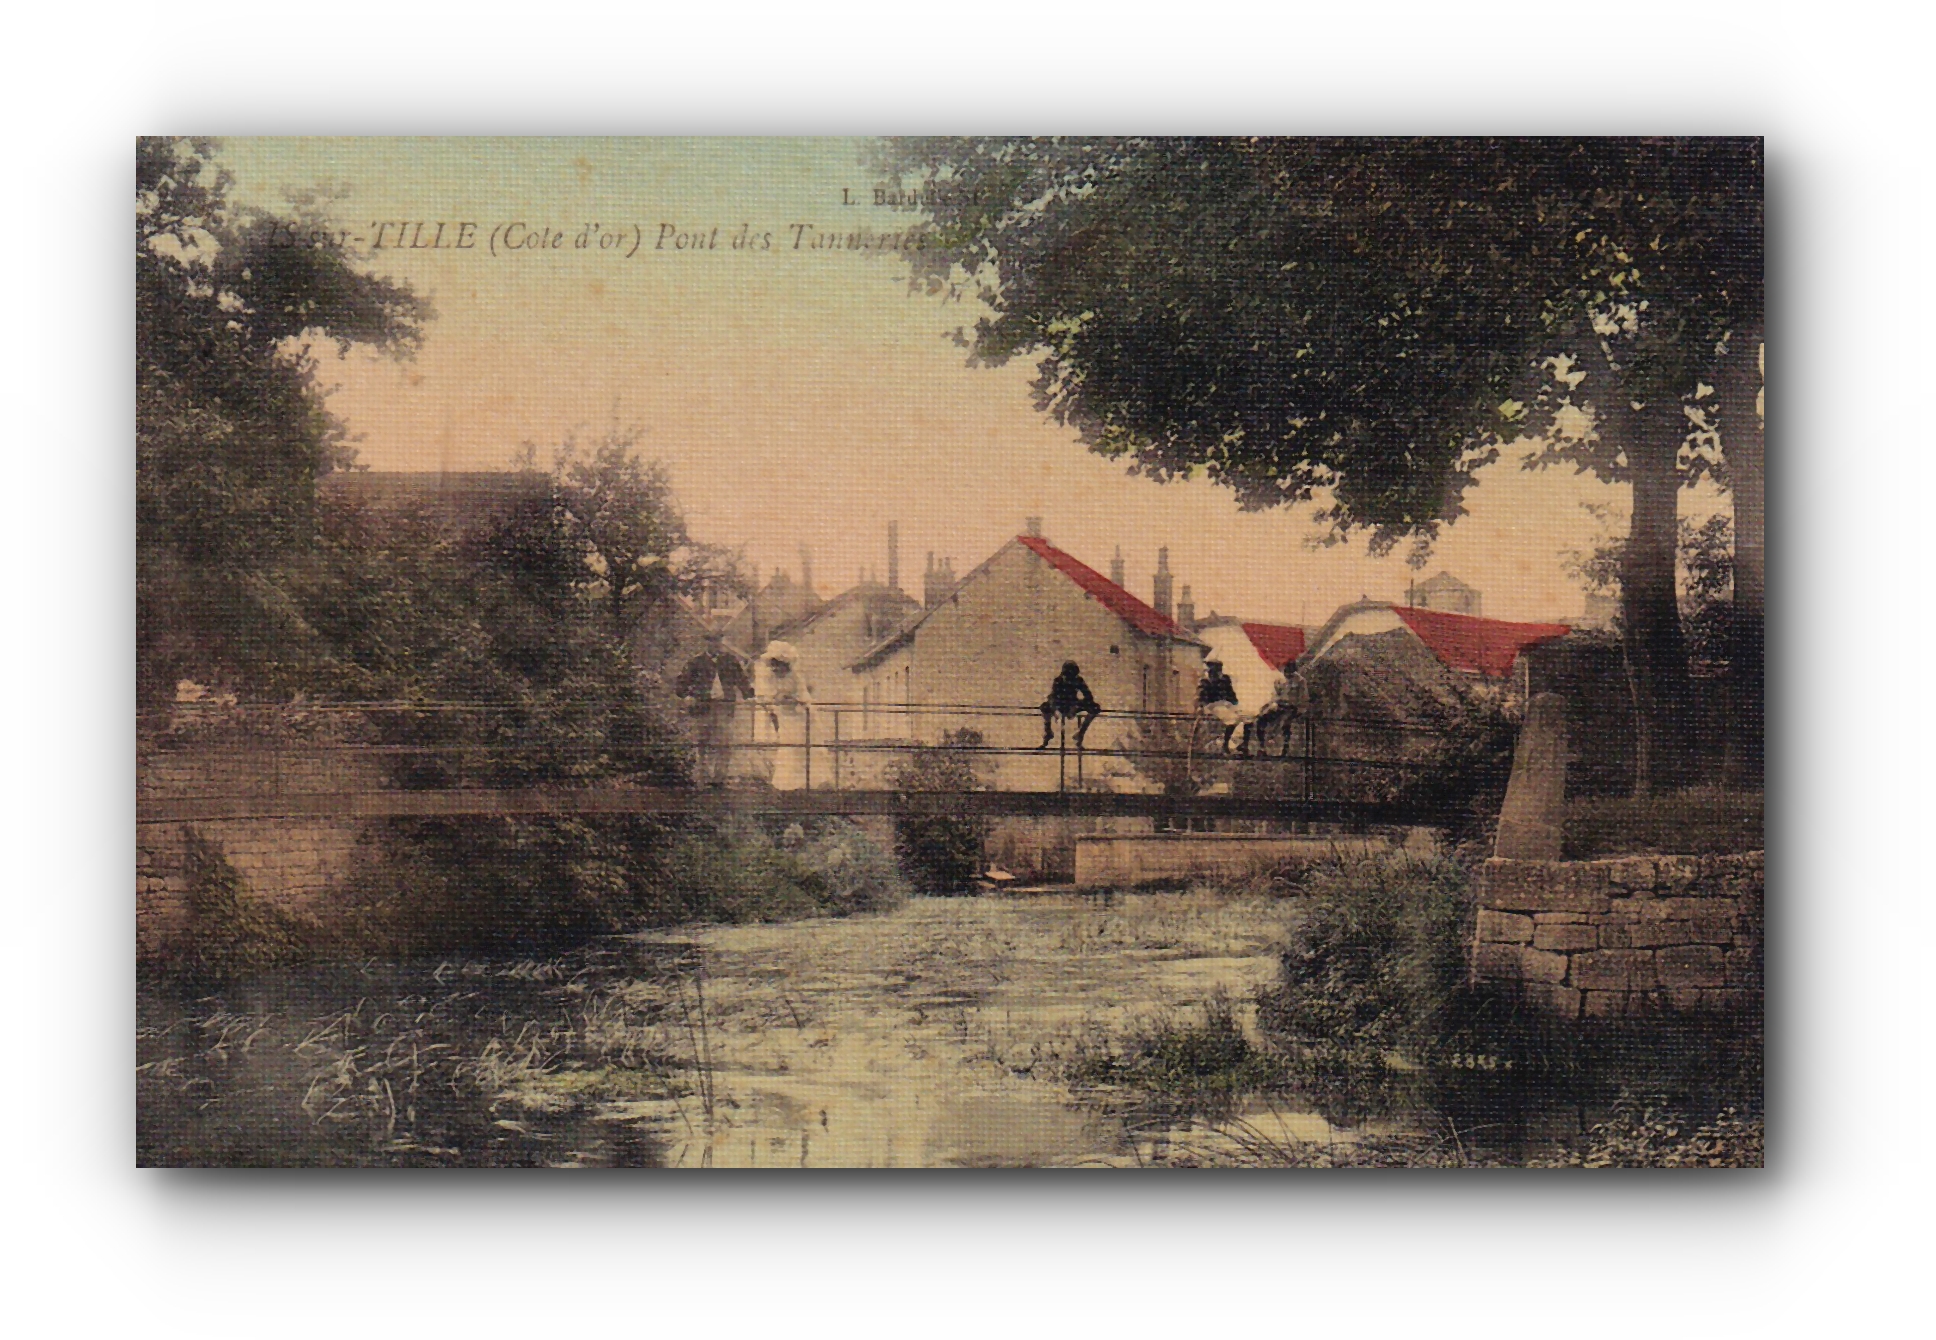 - Pont des Tanneries - IS - sur - TILLE - 21.01.1909 -